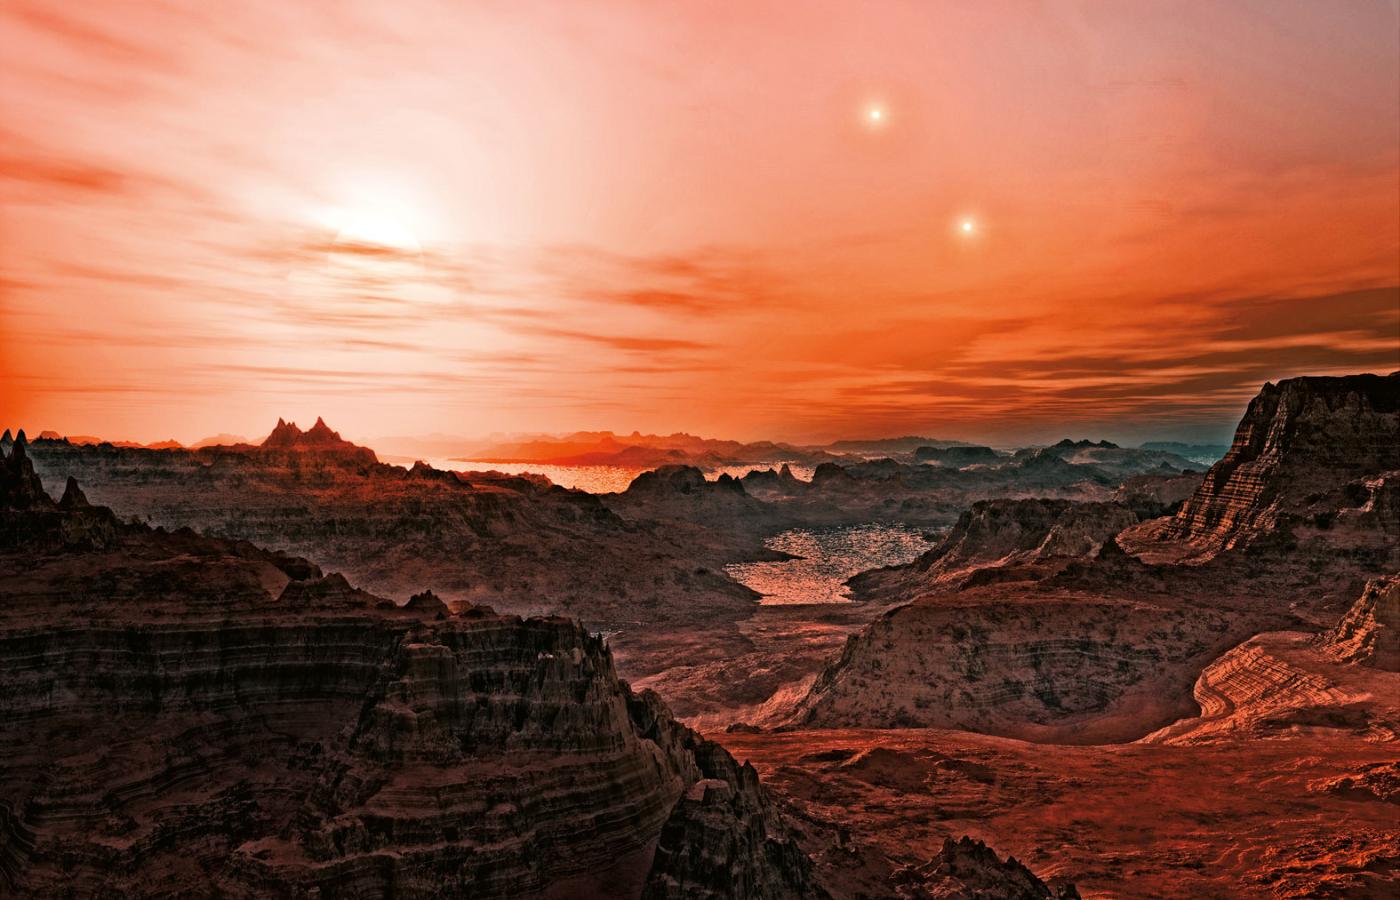 Artystyczna wizja zachodu trzech słońc planety Gliese 667 Cc. Jest to jedna z niewielu planet naszego kosmicznego zaułka, na których może istnieć woda w stanie ciekłym.